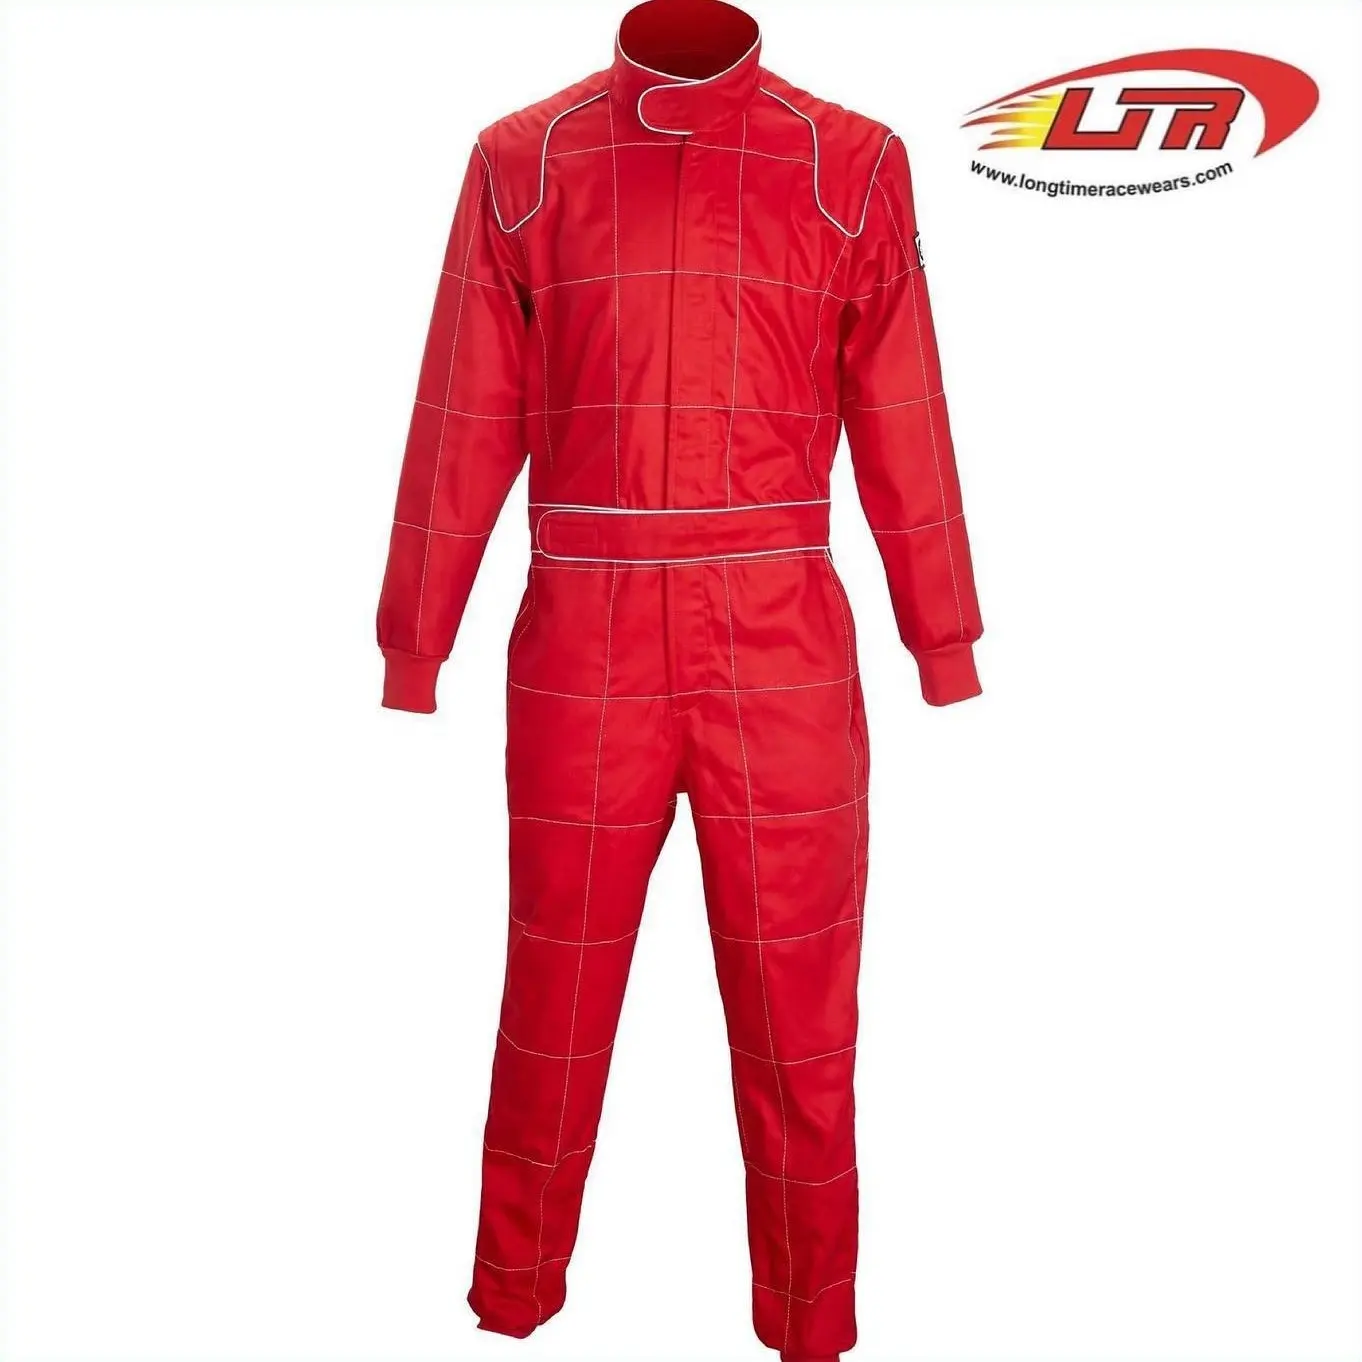 Sprint Car 3.2A/1 Custom Made Fireproof Drag Racing Suit SFI 3.2A/1 and 3.2A/5 Drag racing suit flame retardant